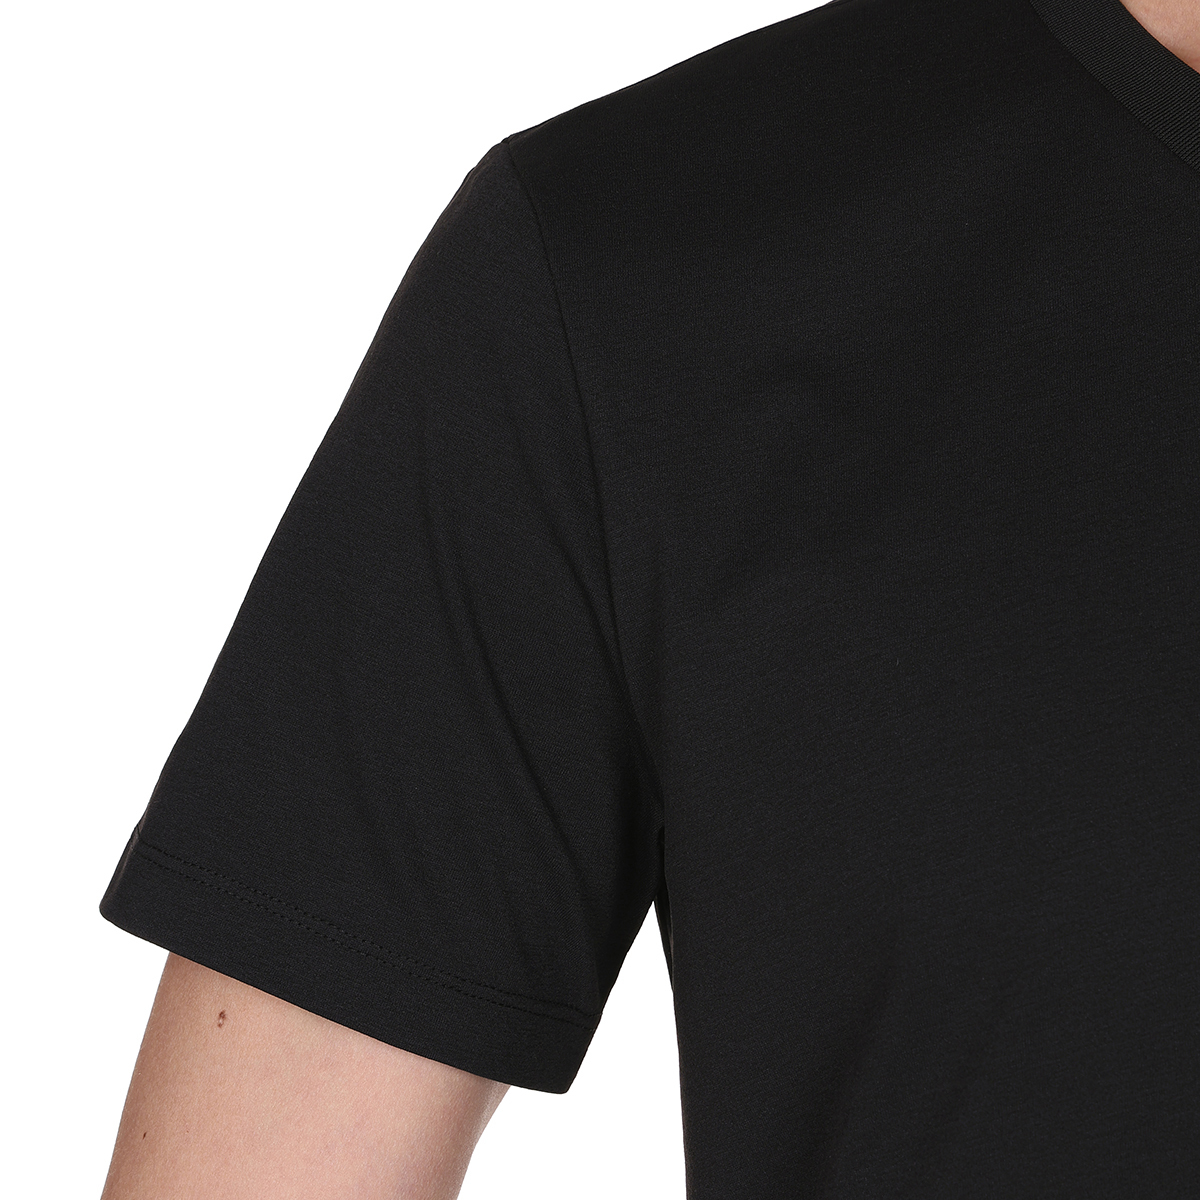 게스 남성 반소매 슬럽 브이넥 티셔츠 - 블랙